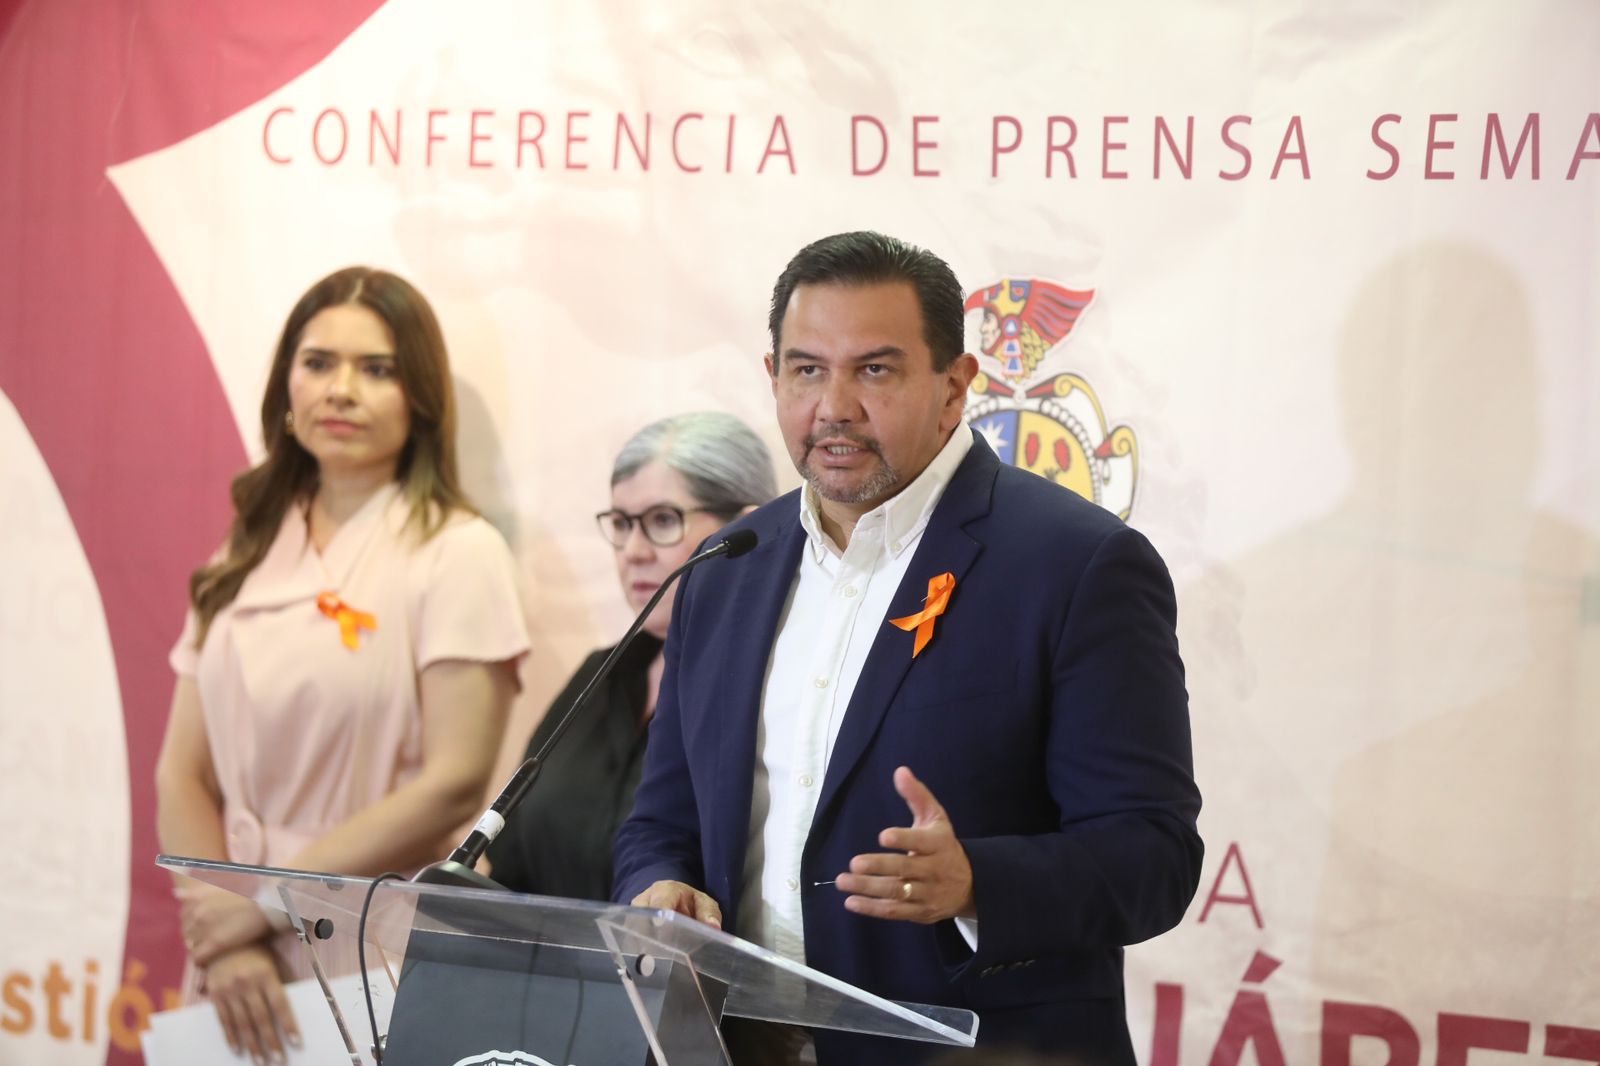 La prevención de la violencia debe ser un tema permanente para los Ayuntamientos: Cruz Pérez Cuéllar